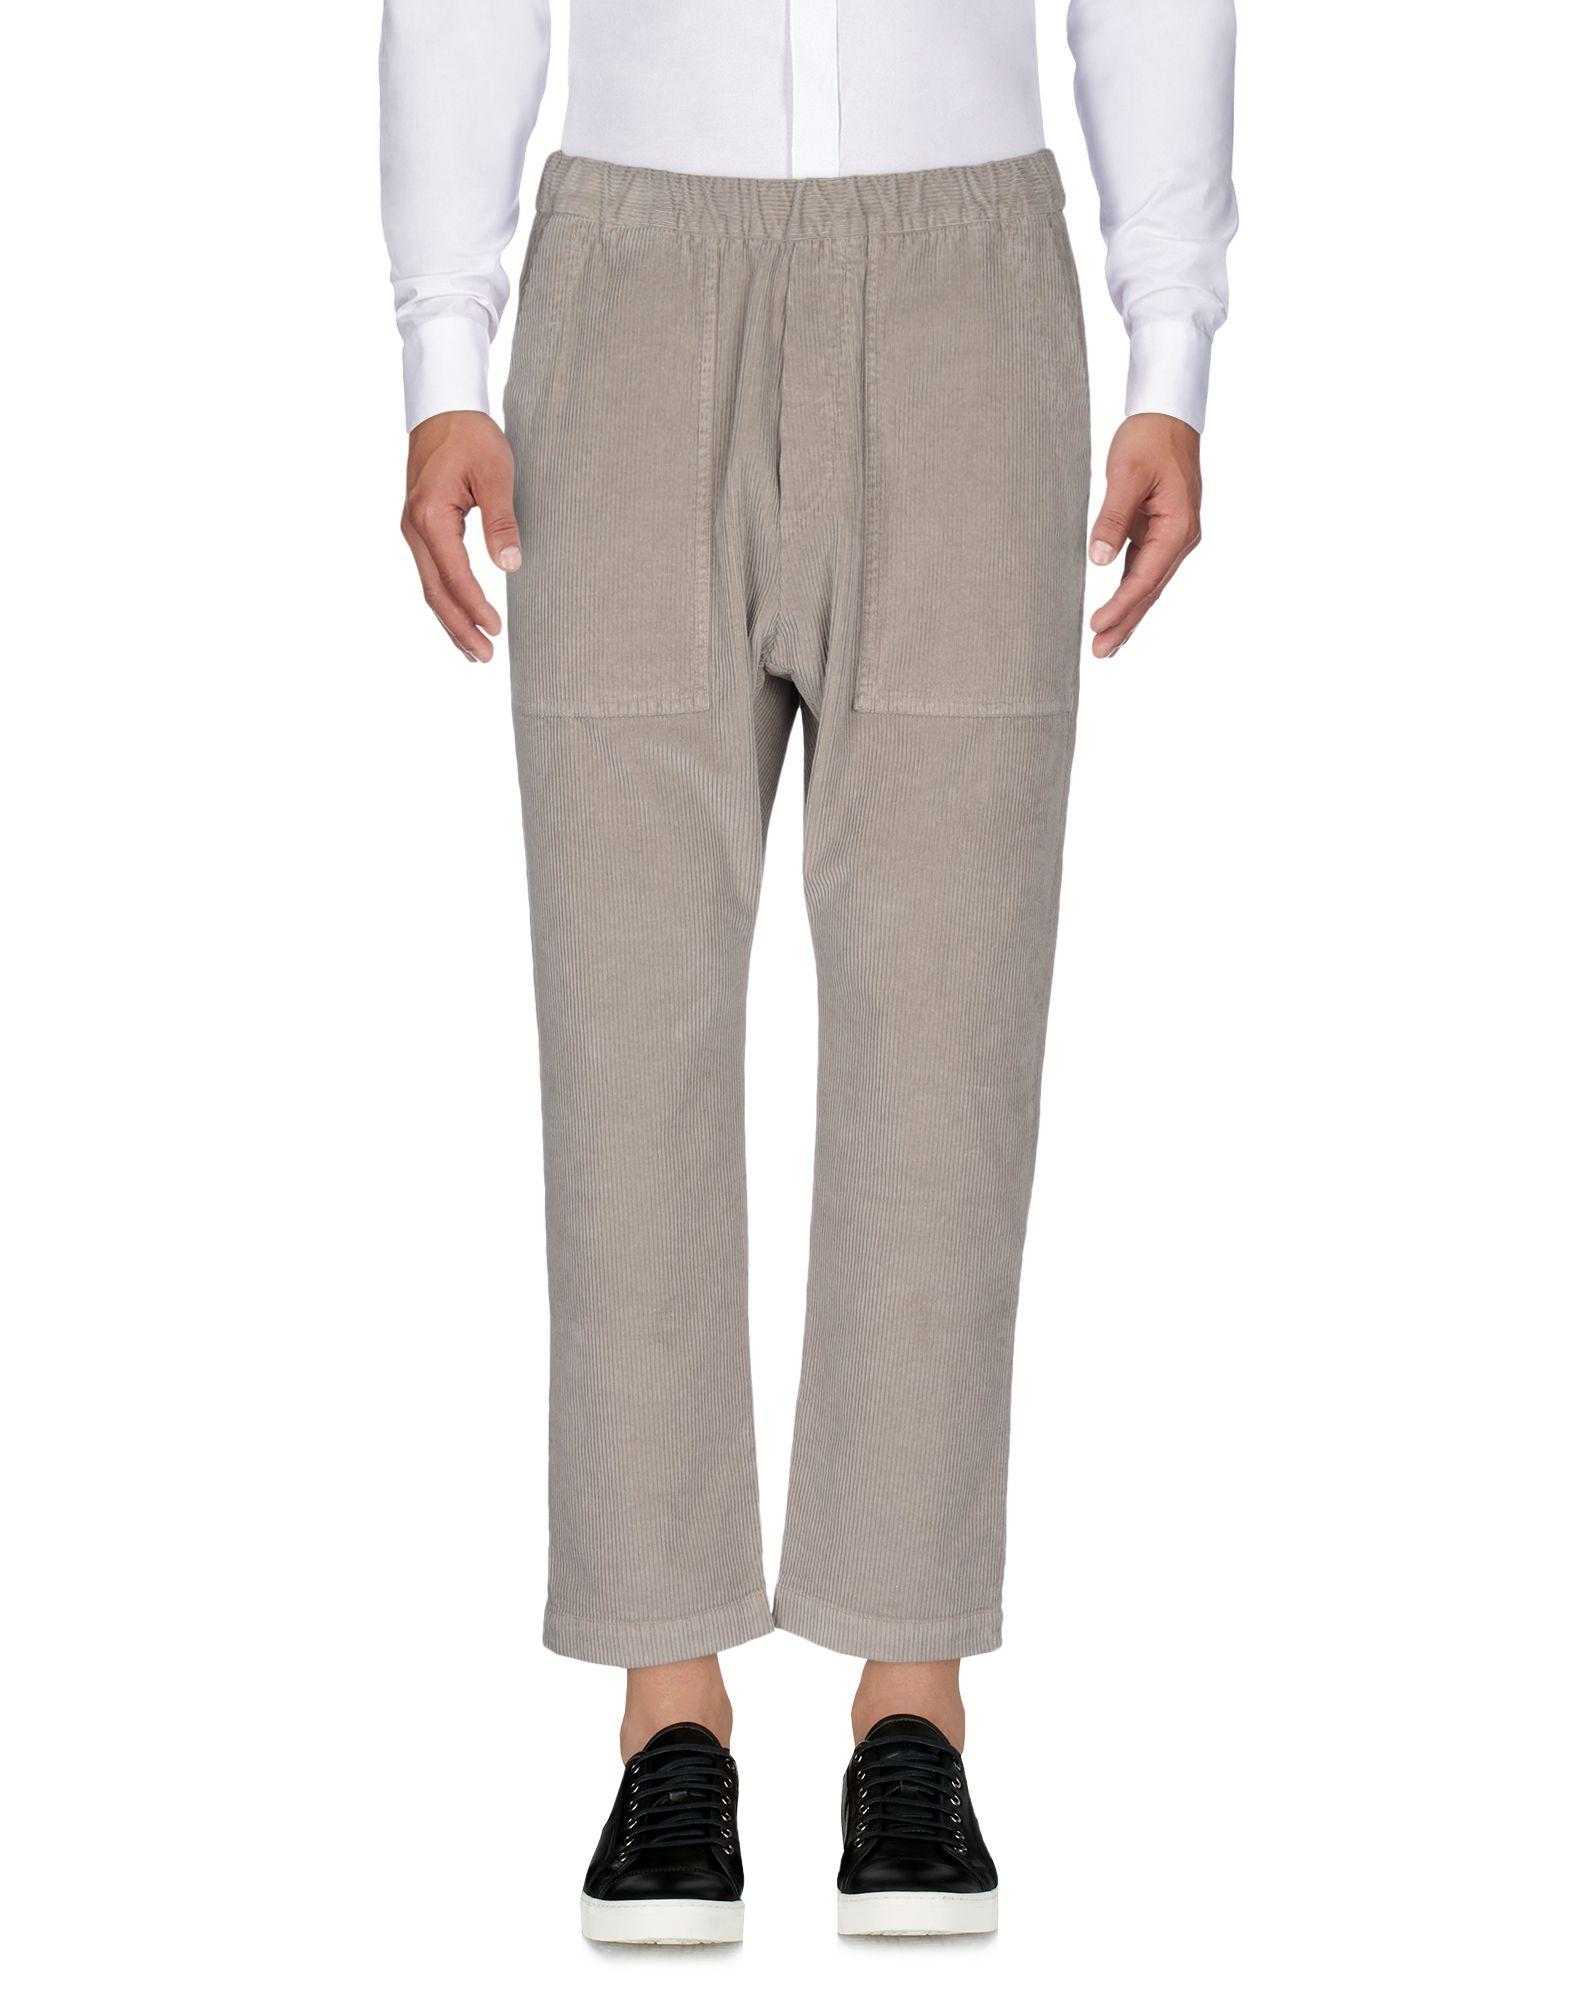 Barena Velvet Casual Pants in Gray for Men - Lyst